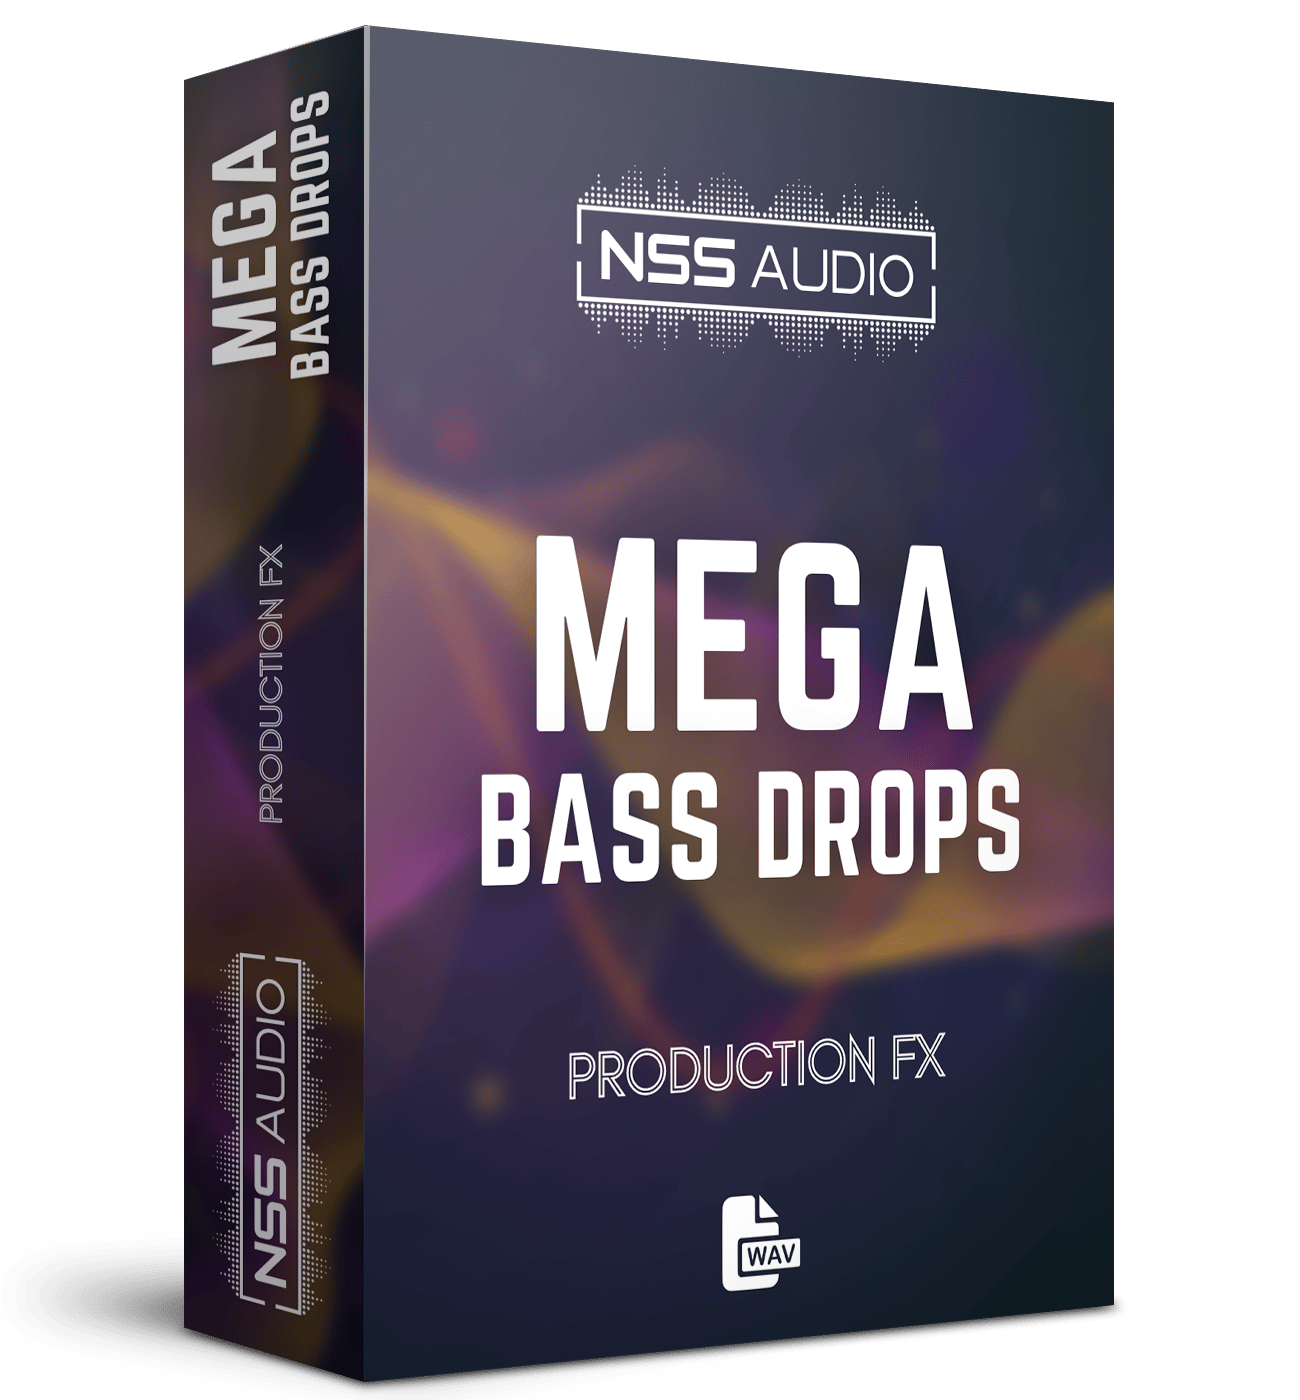 MEGA Bass Drops